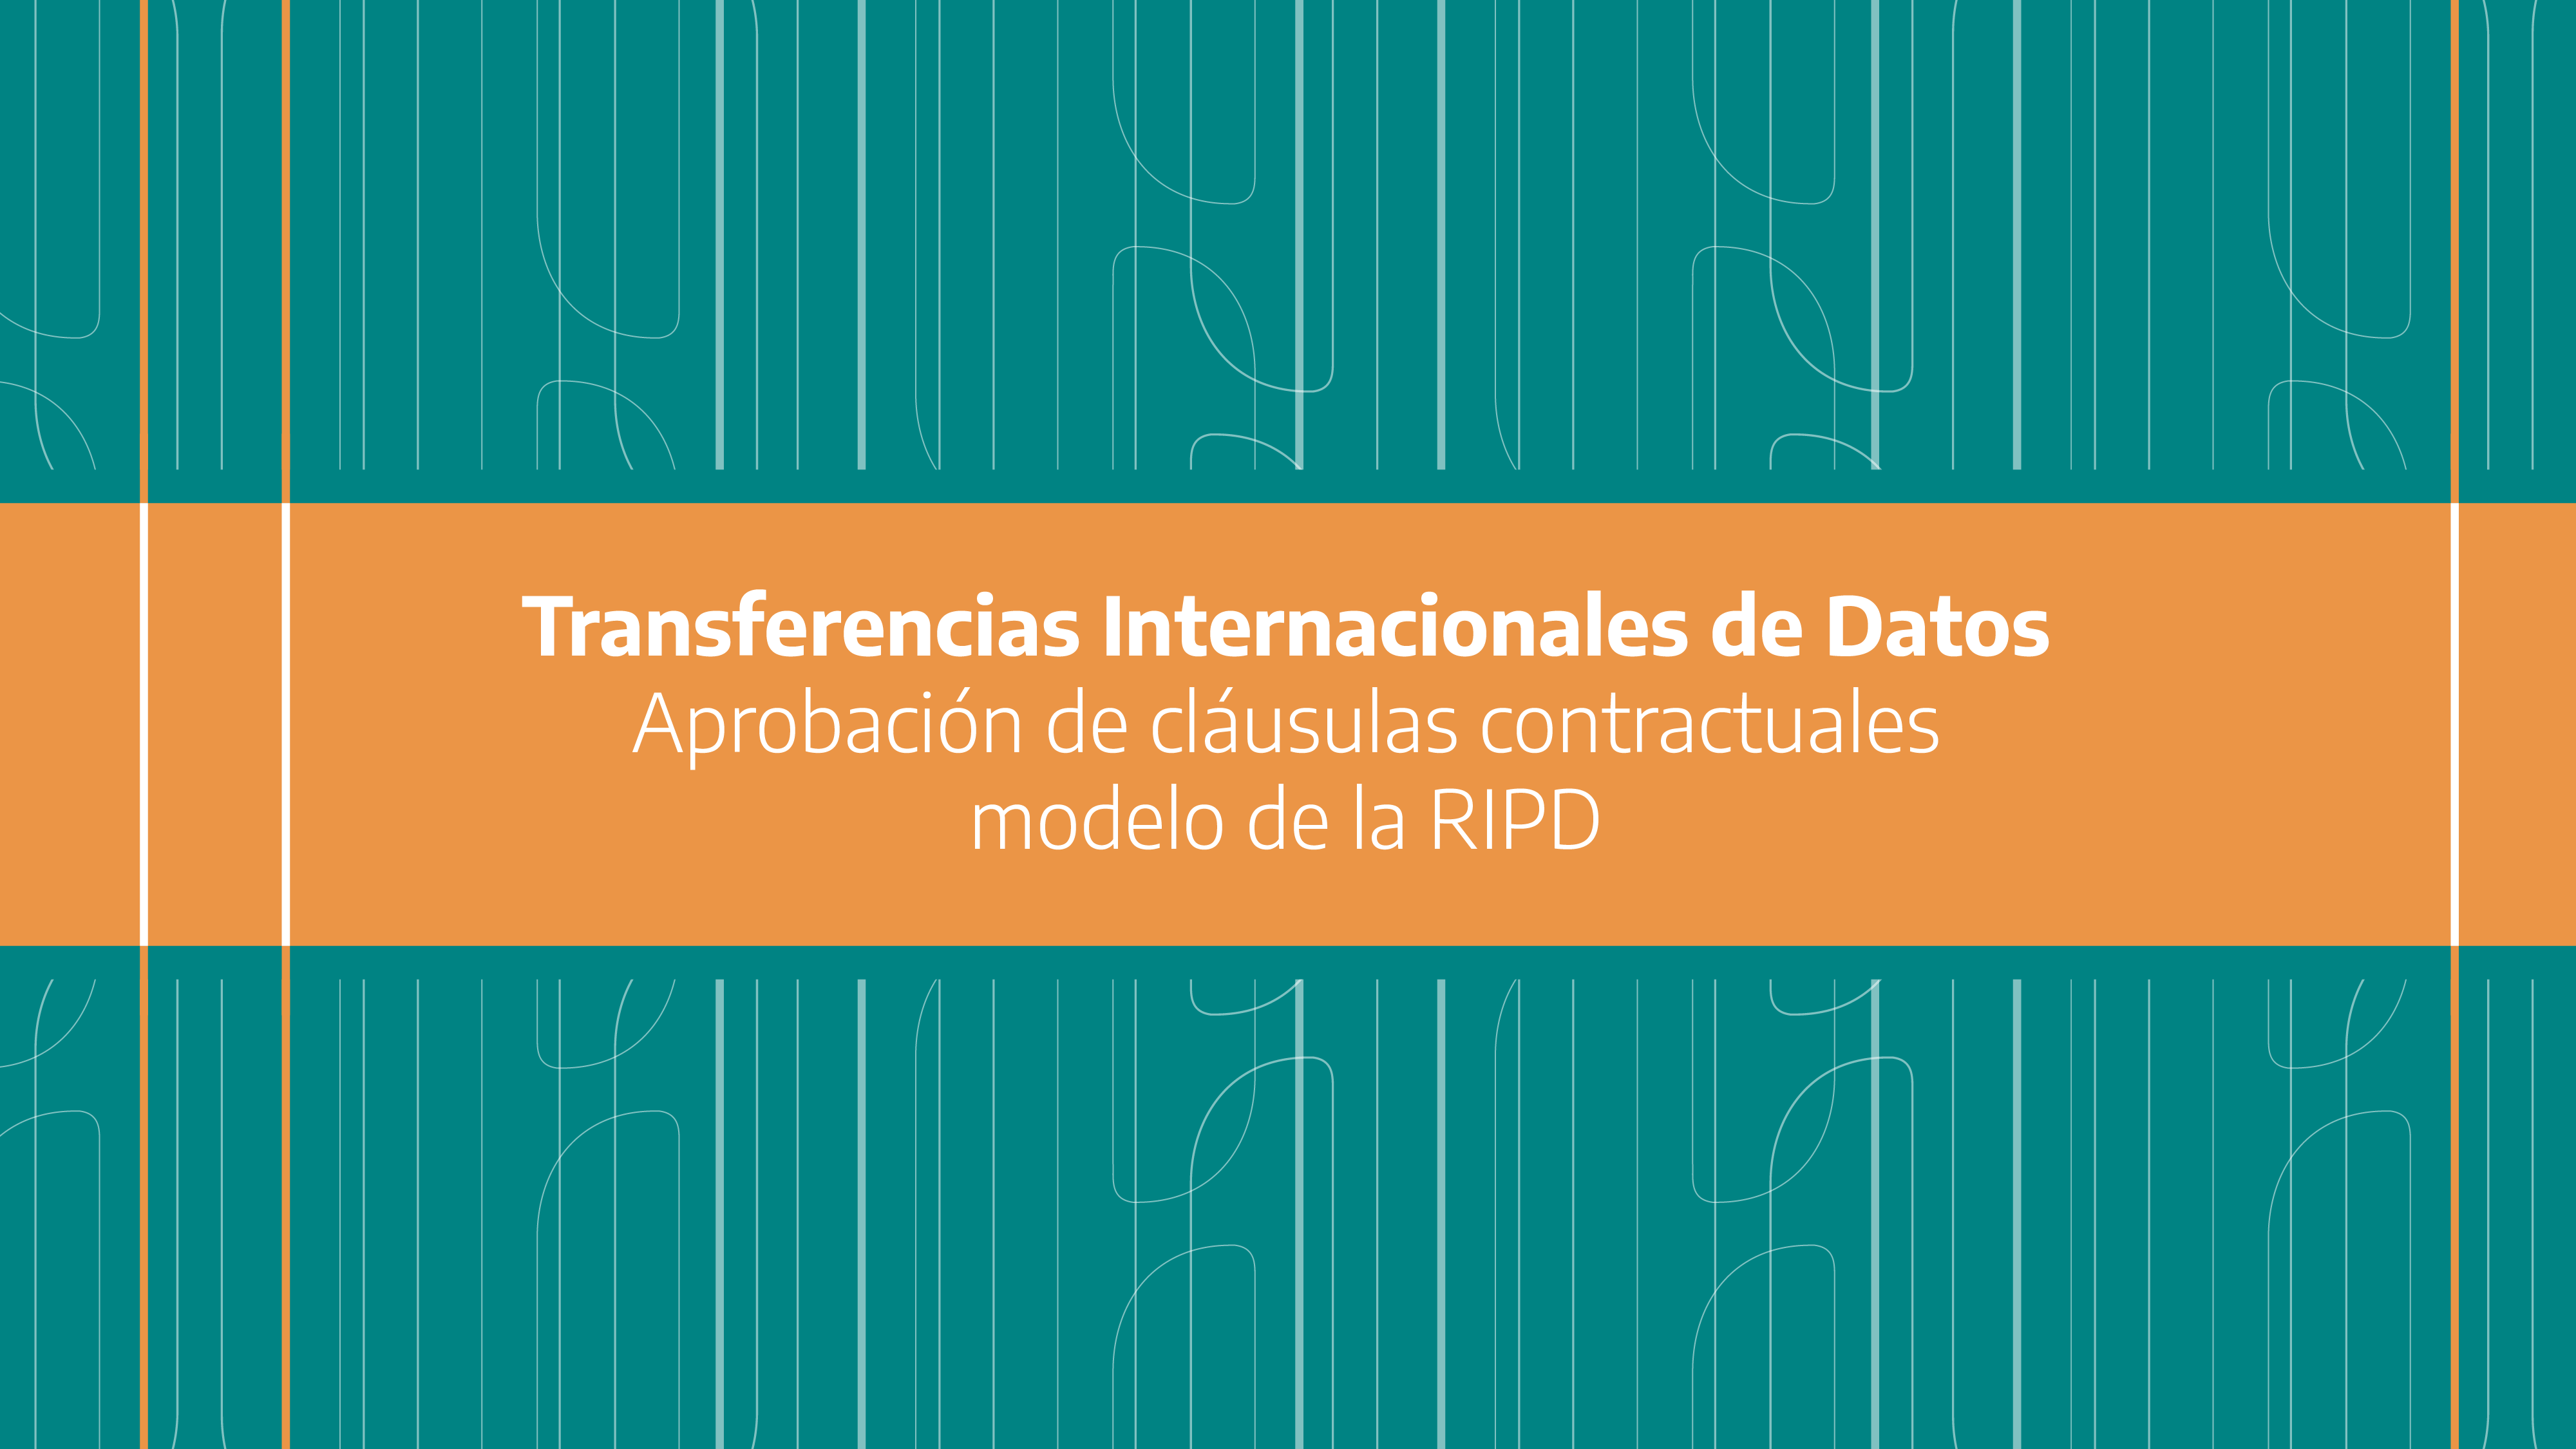 La AAIP aprobó cláusulas contractuales modelo de la RIPD para transferencias internacionales de datos